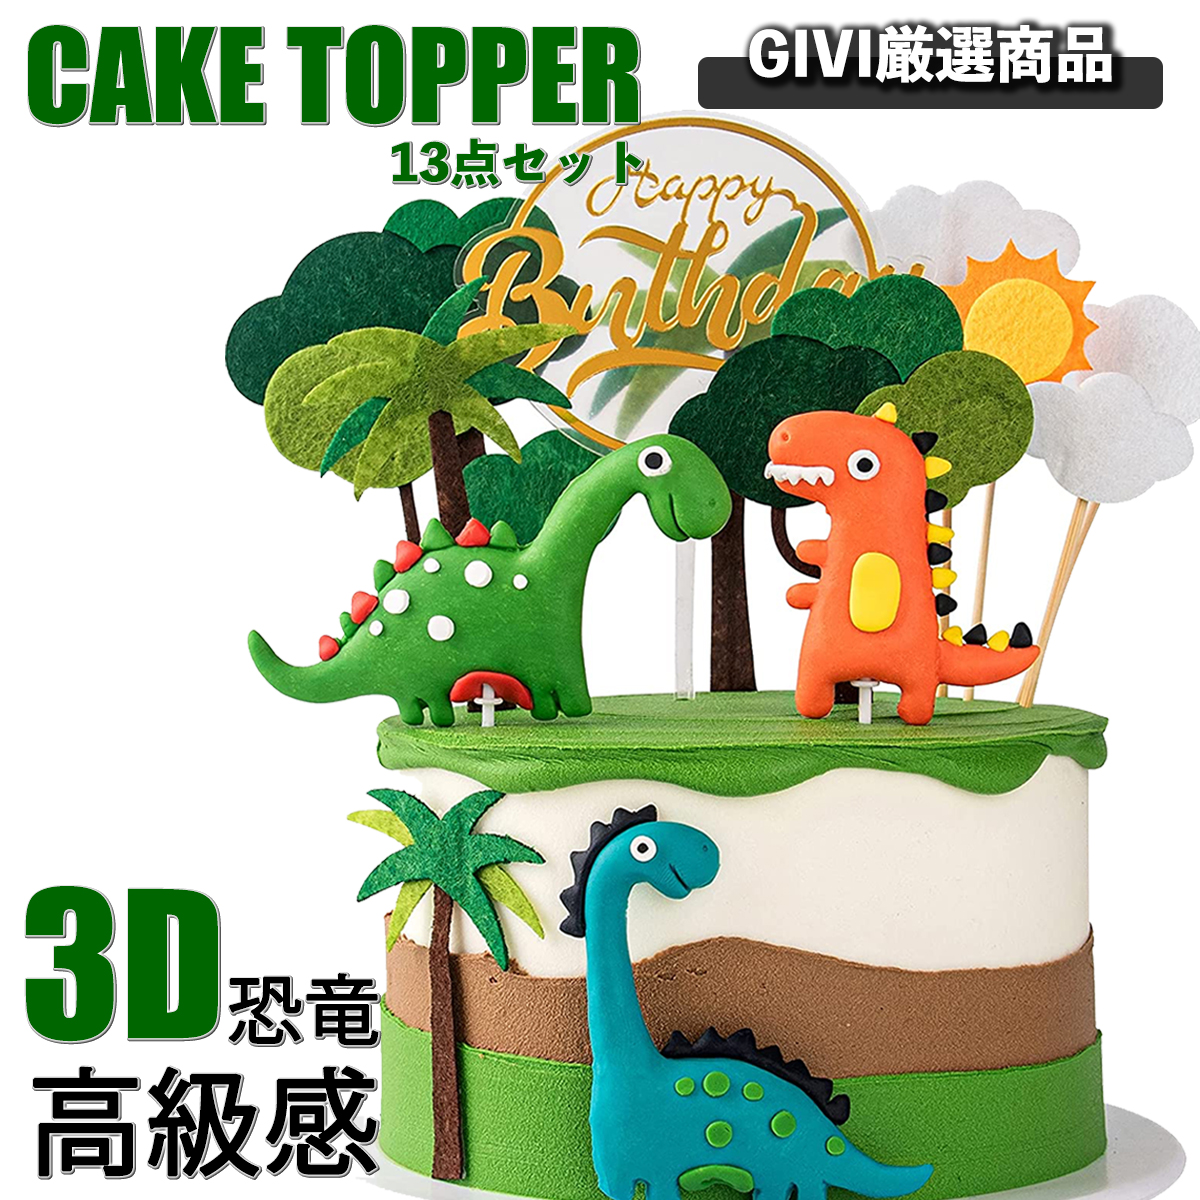 【60%OFF!】 おすすめ特集 ケーキにまとめて飾っても華やかになりますがカップケーキなど一つずつに飾っても可愛らしい印象になります ケーキトッパー 恐竜 ケーキ飾り 高級3D恐竜 13点セット ケーキデコレーション カップケーキトッパー フルーツピック 竹楊枝 男の子 誕生日 パーティー jukebo.fr jukebo.fr